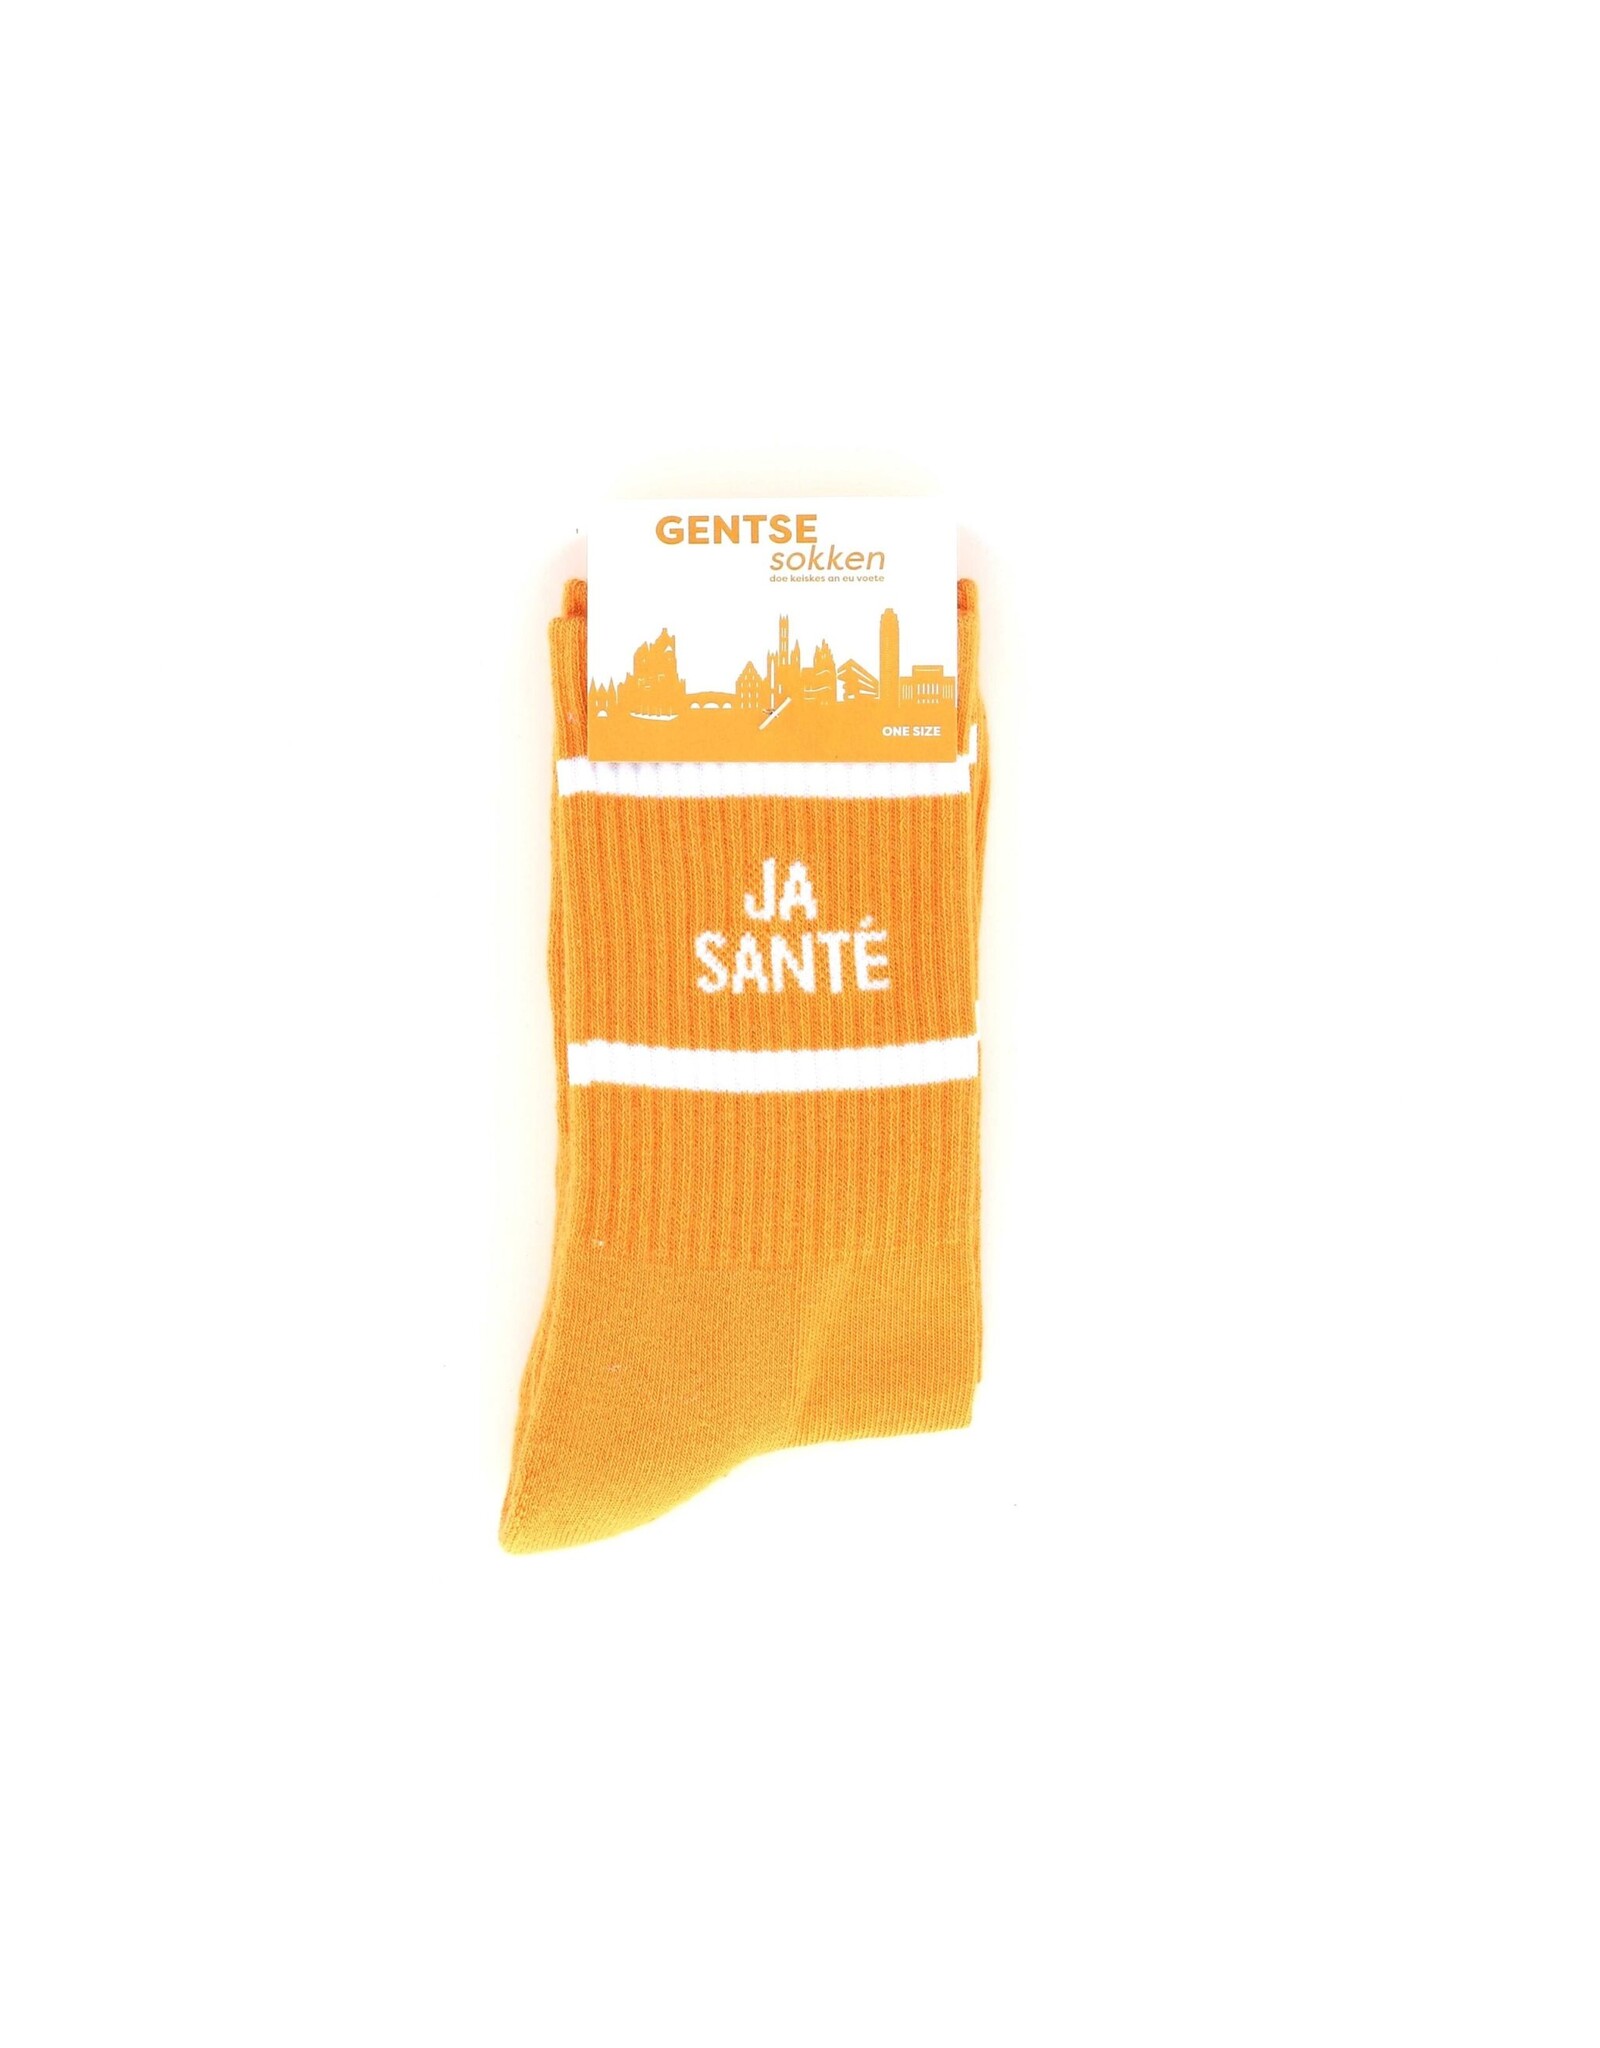 Gentse sokken Gentse sokken - Ja santé - Katoen - One size